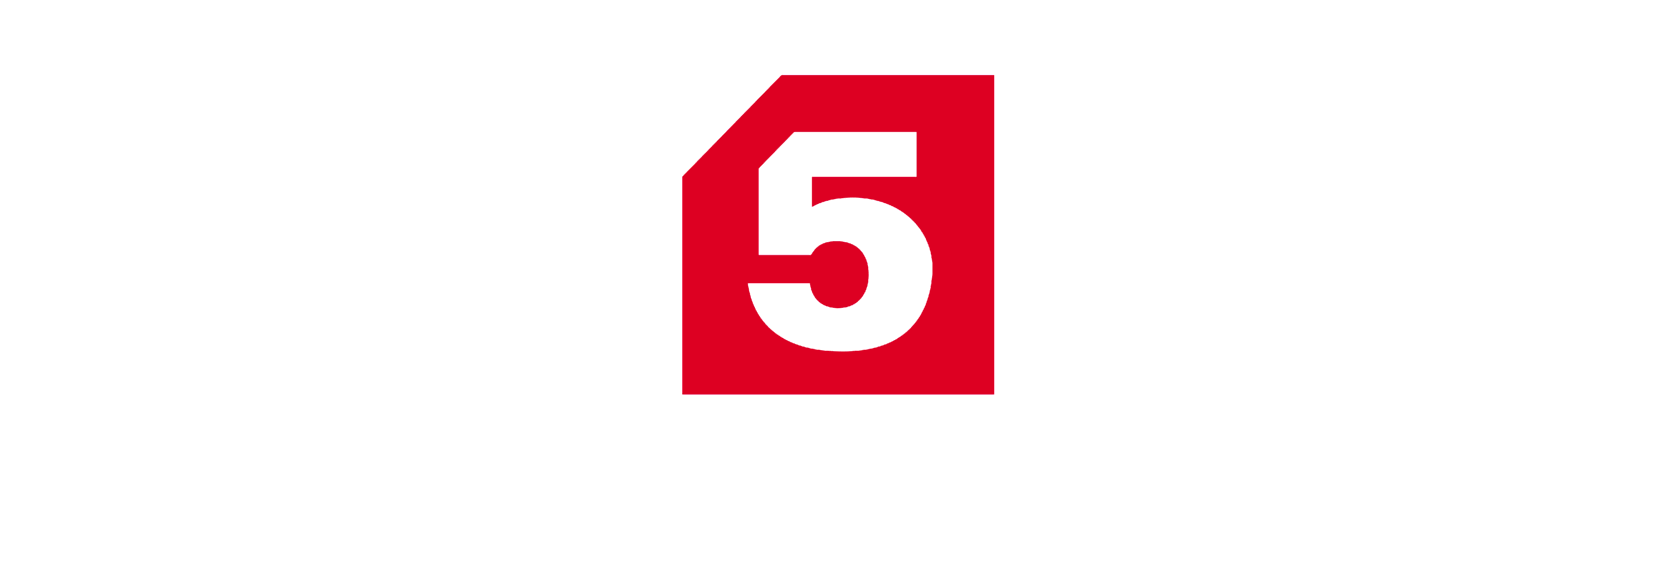 Пятый канал трансляция. Телекомпания 5 канал Петербург. Петербург 5 канал лого. Пятый канал Телеканал логотип. Петербург пятый канал 5 логотип.